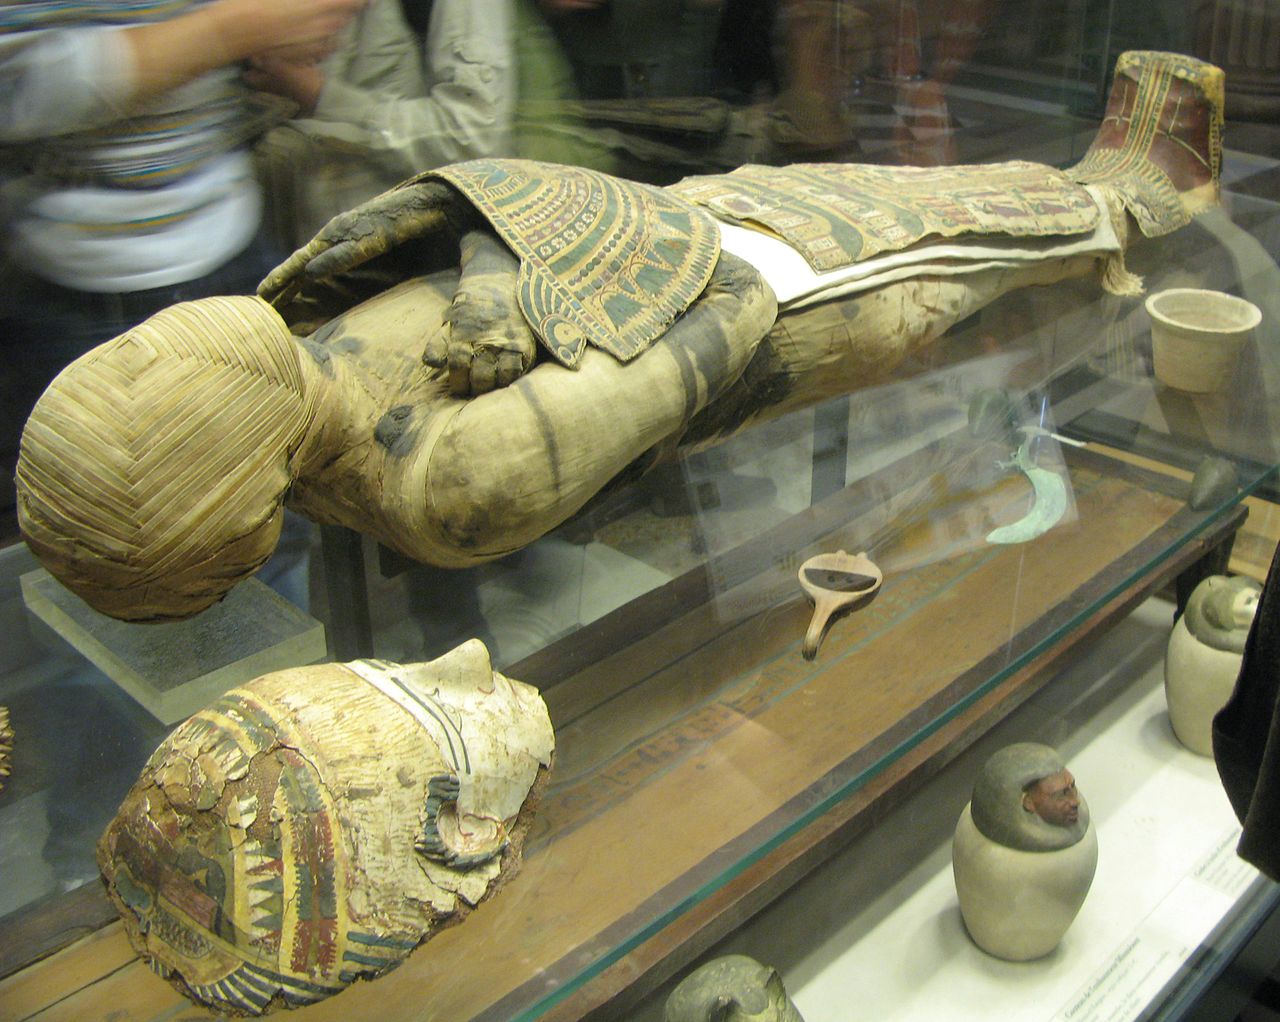 Radionica u Sakari otkriva tajne sastojke mumifikacije